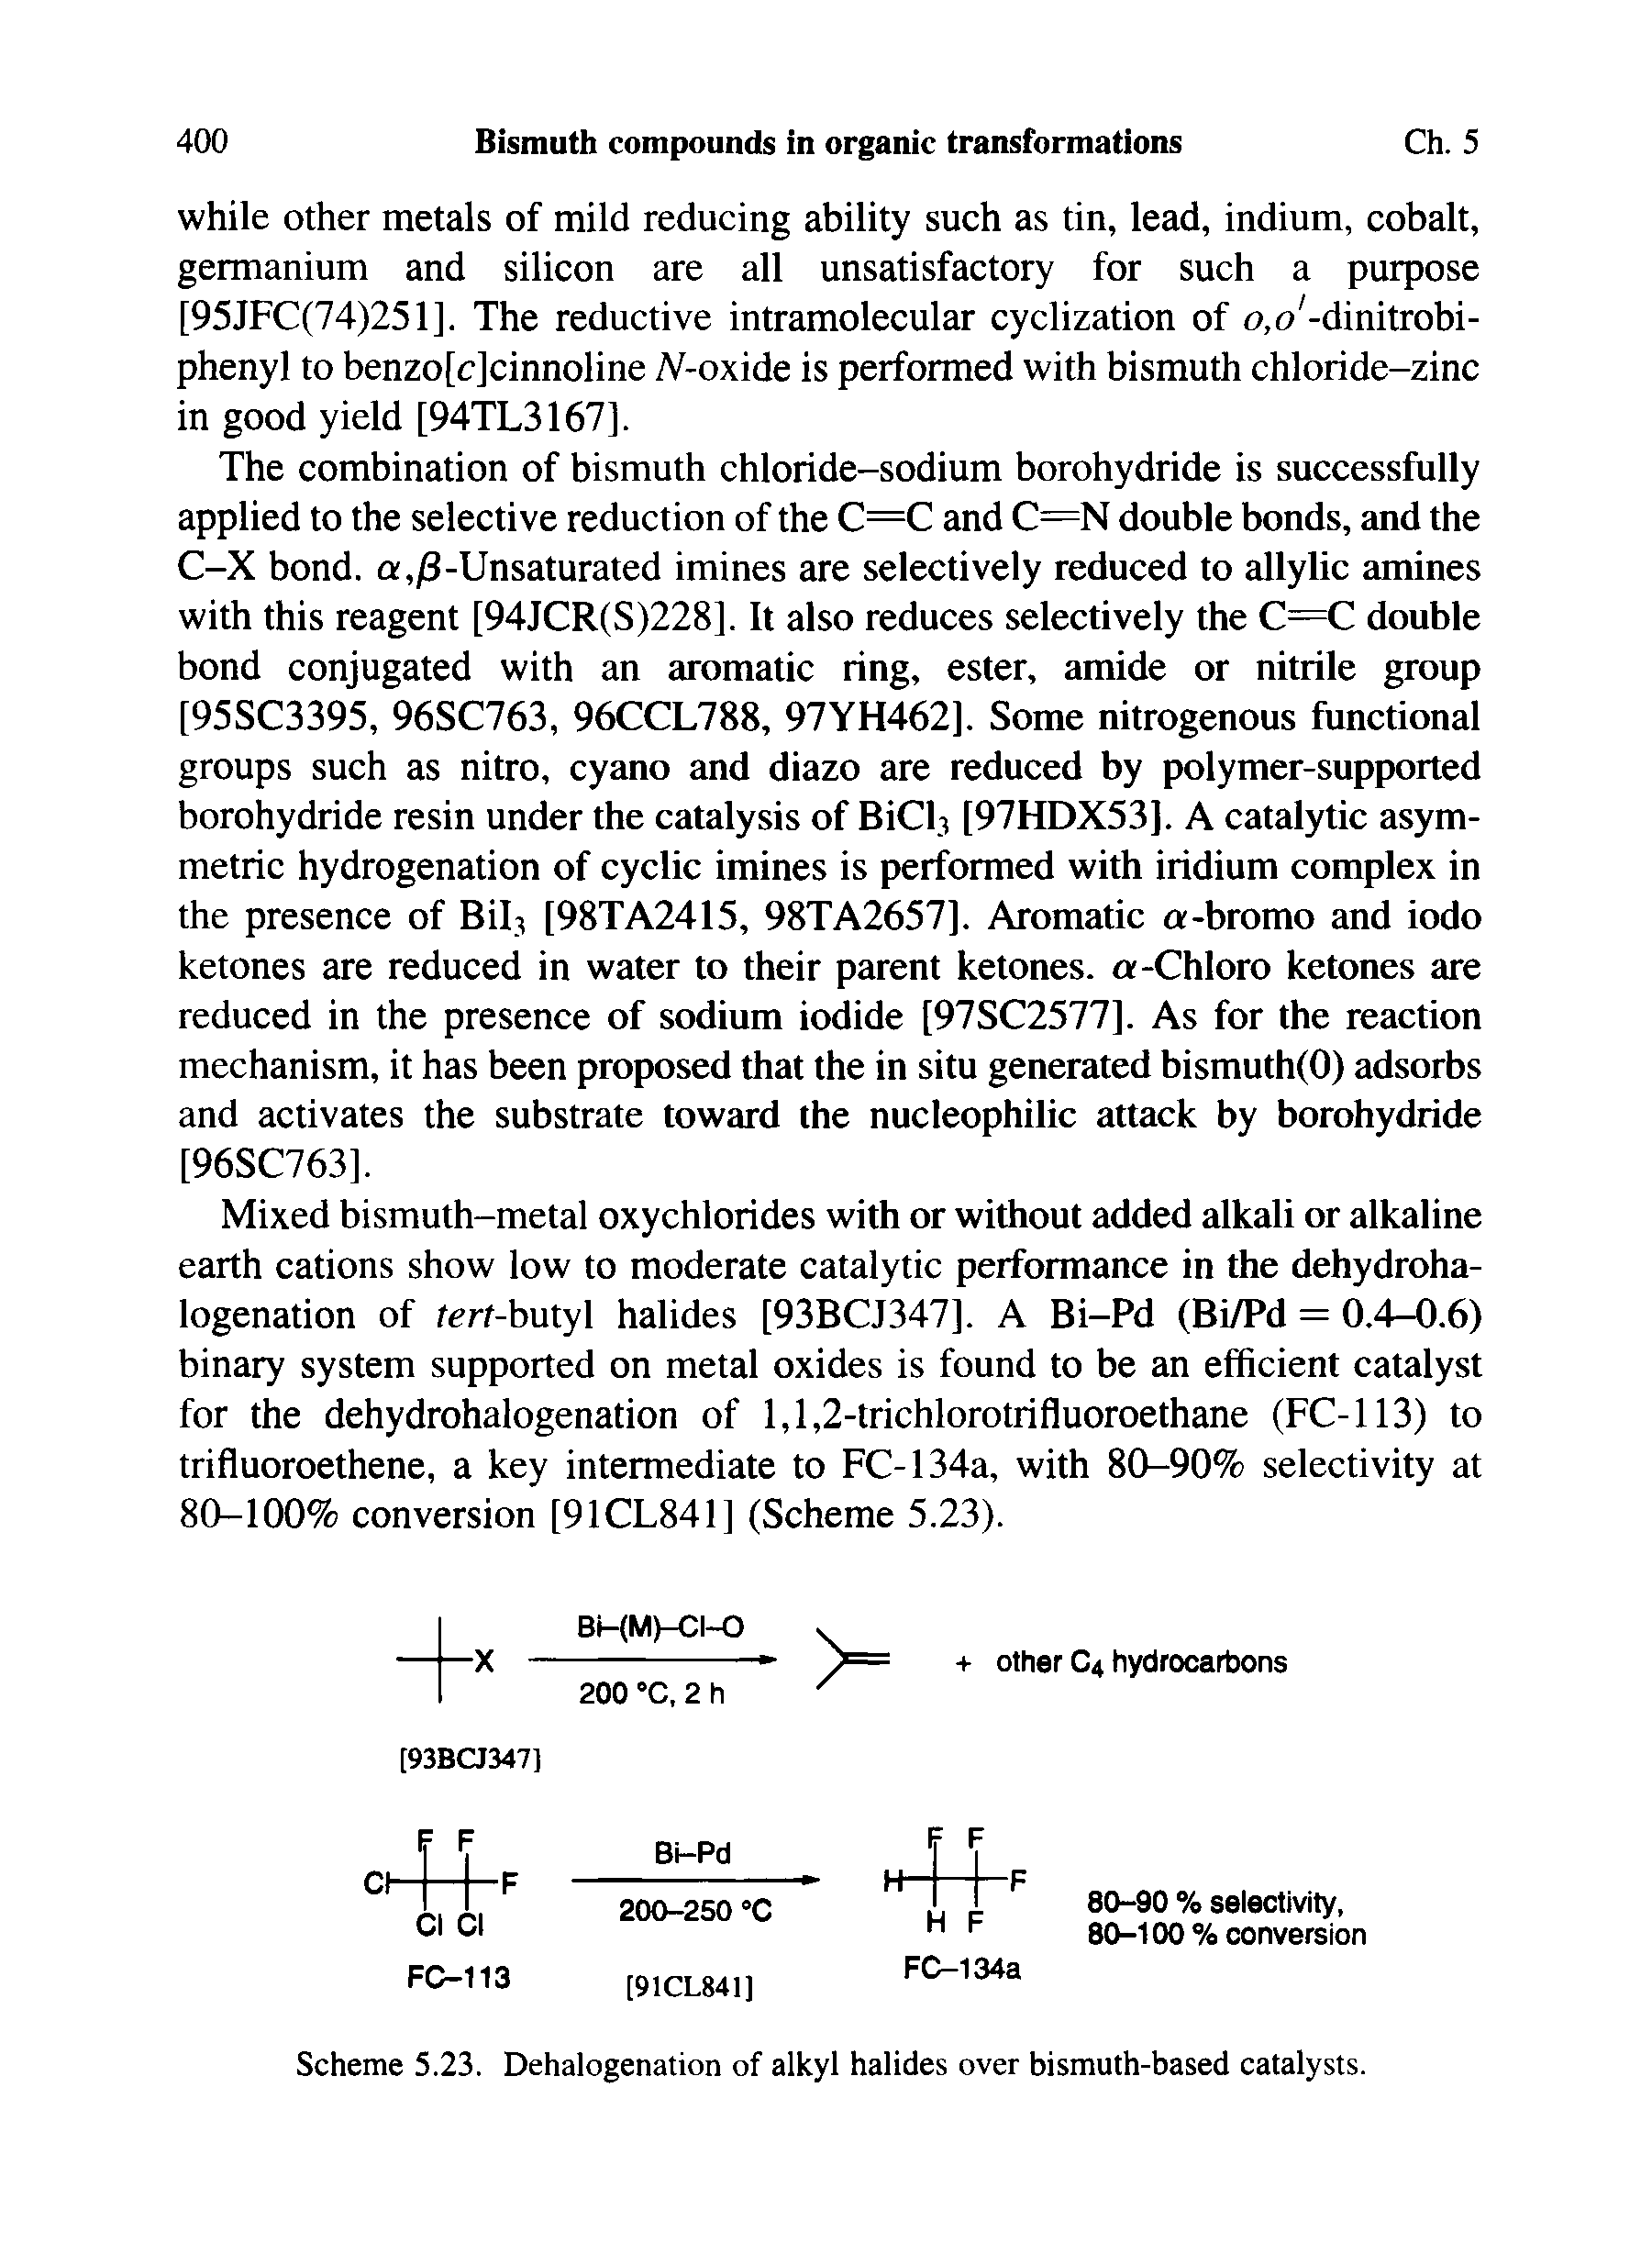 Scheme 5.23. Dehalogenation of alkyl halides over bismuth-based catalysts.